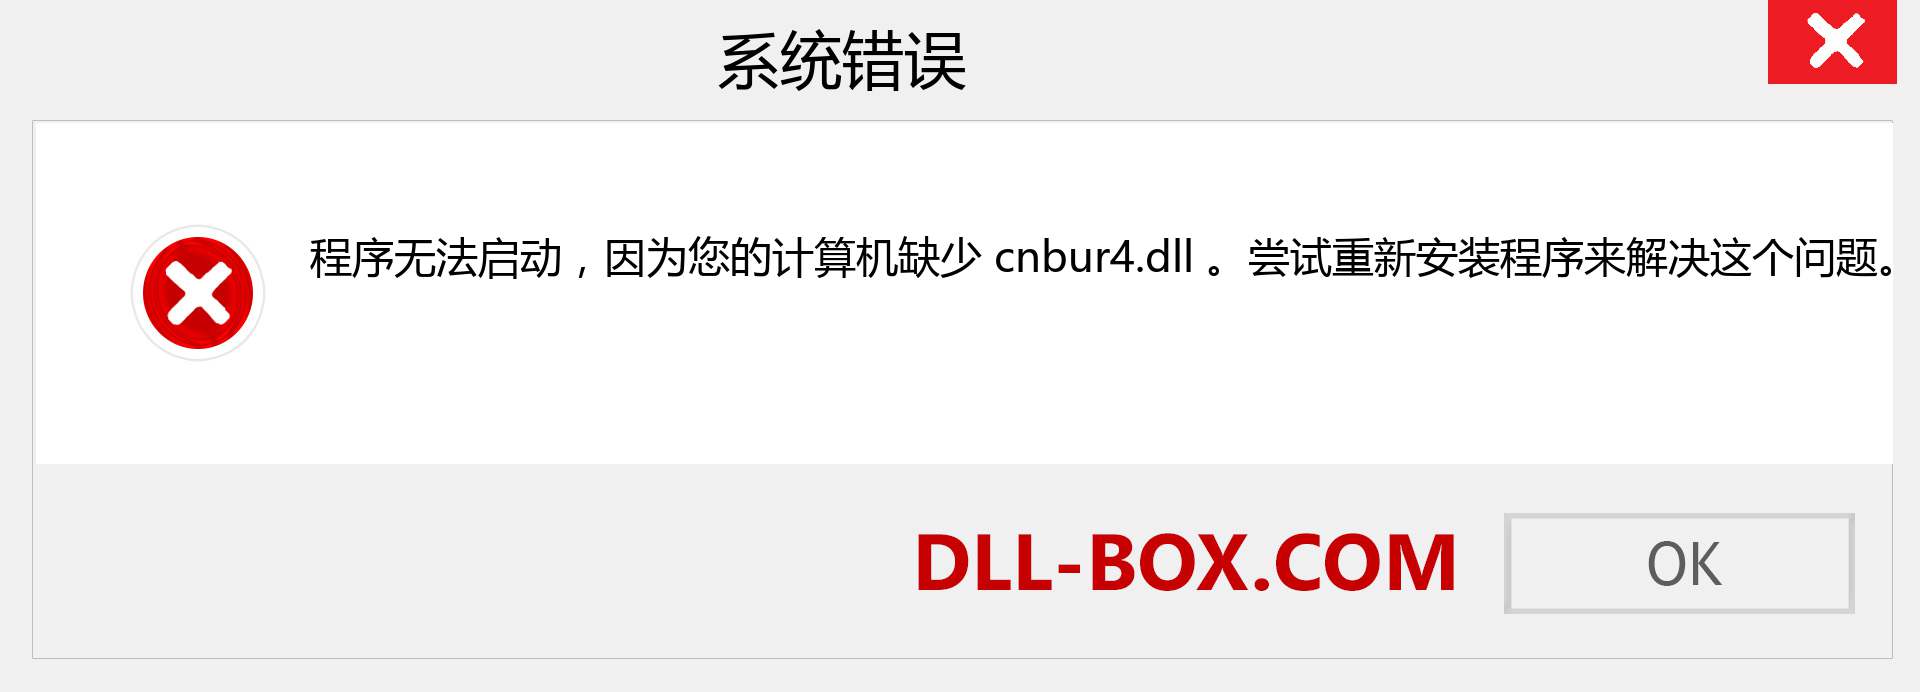 cnbur4.dll 文件丢失？。 适用于 Windows 7、8、10 的下载 - 修复 Windows、照片、图像上的 cnbur4 dll 丢失错误